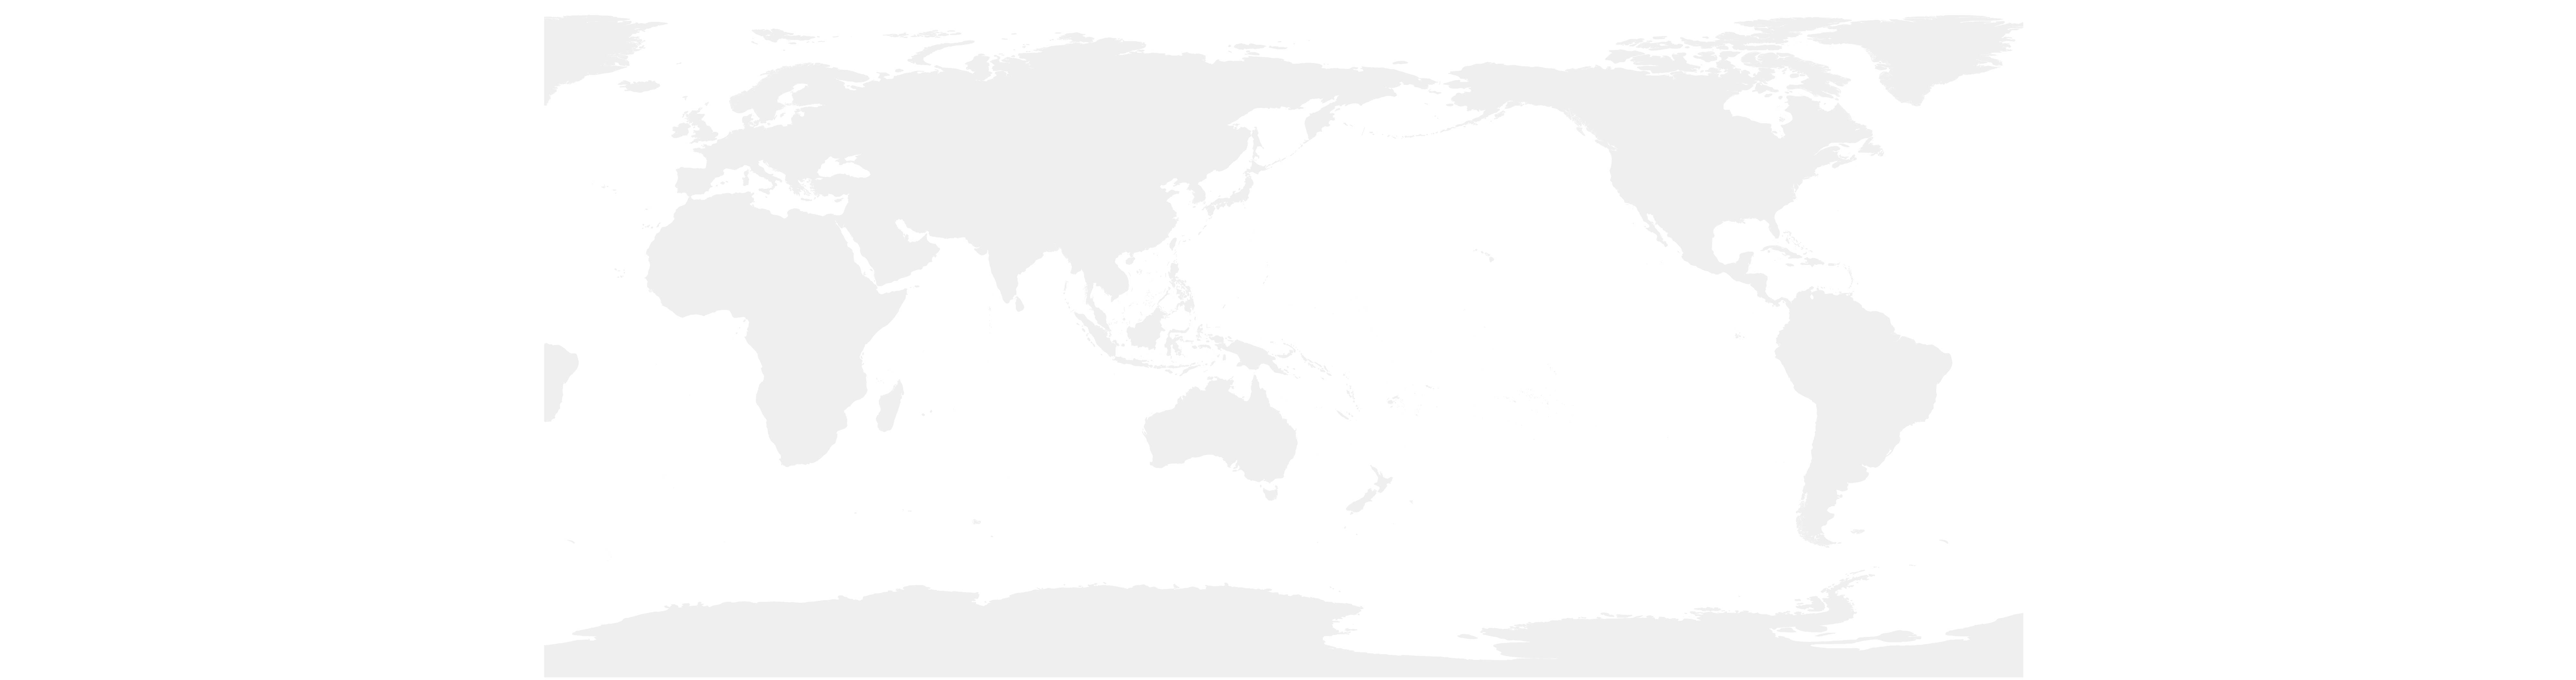 世界地图6_画板 1.jpg